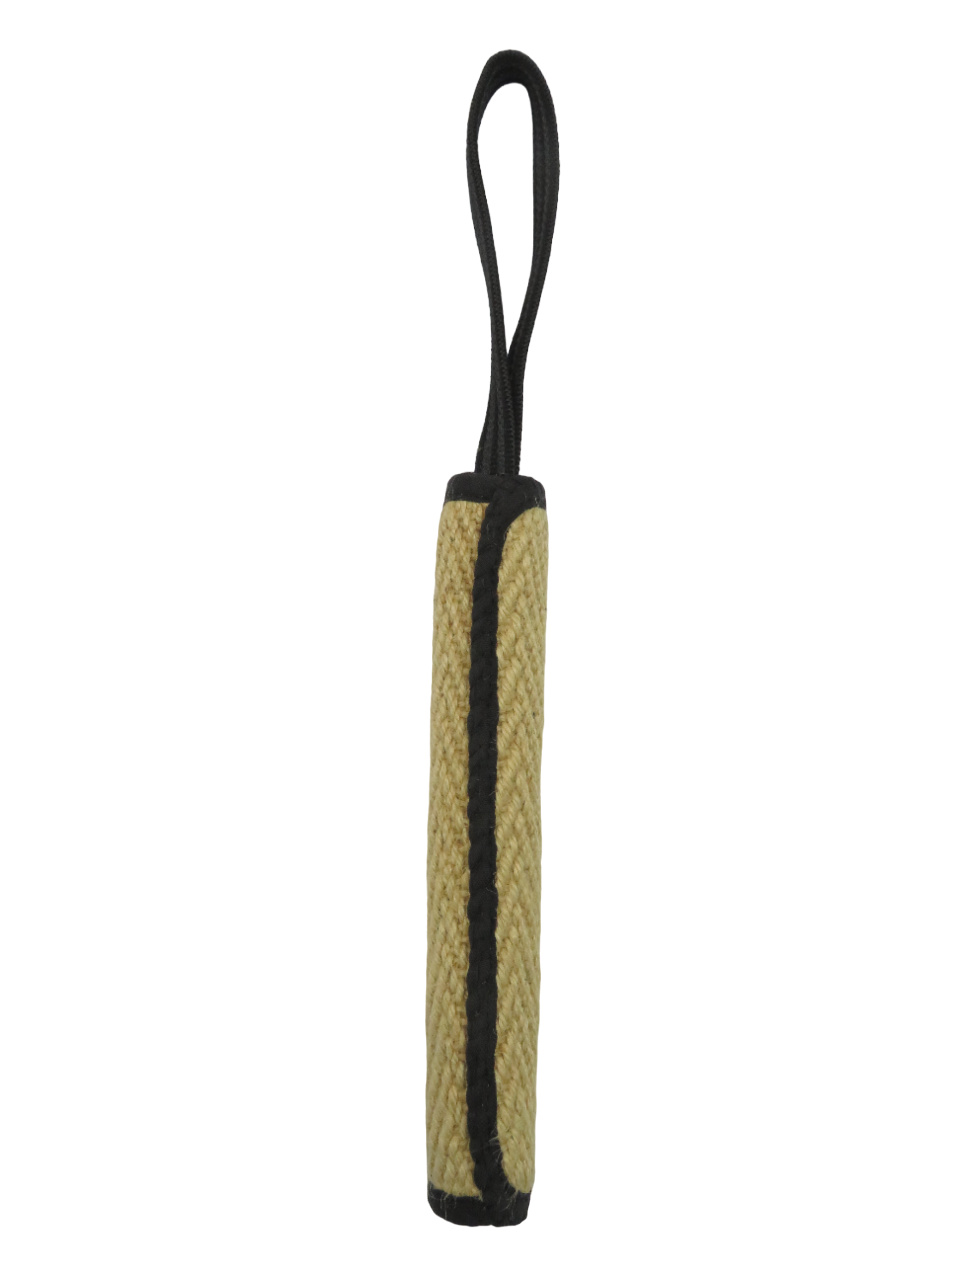 BOW WOW BOW WOW джутовая палка с 9-миллиметровой прорезиненной ручкой (натуральная) (120 г) bow wow bow wow натуральная джутовая кость с черной тканью 20х7 см